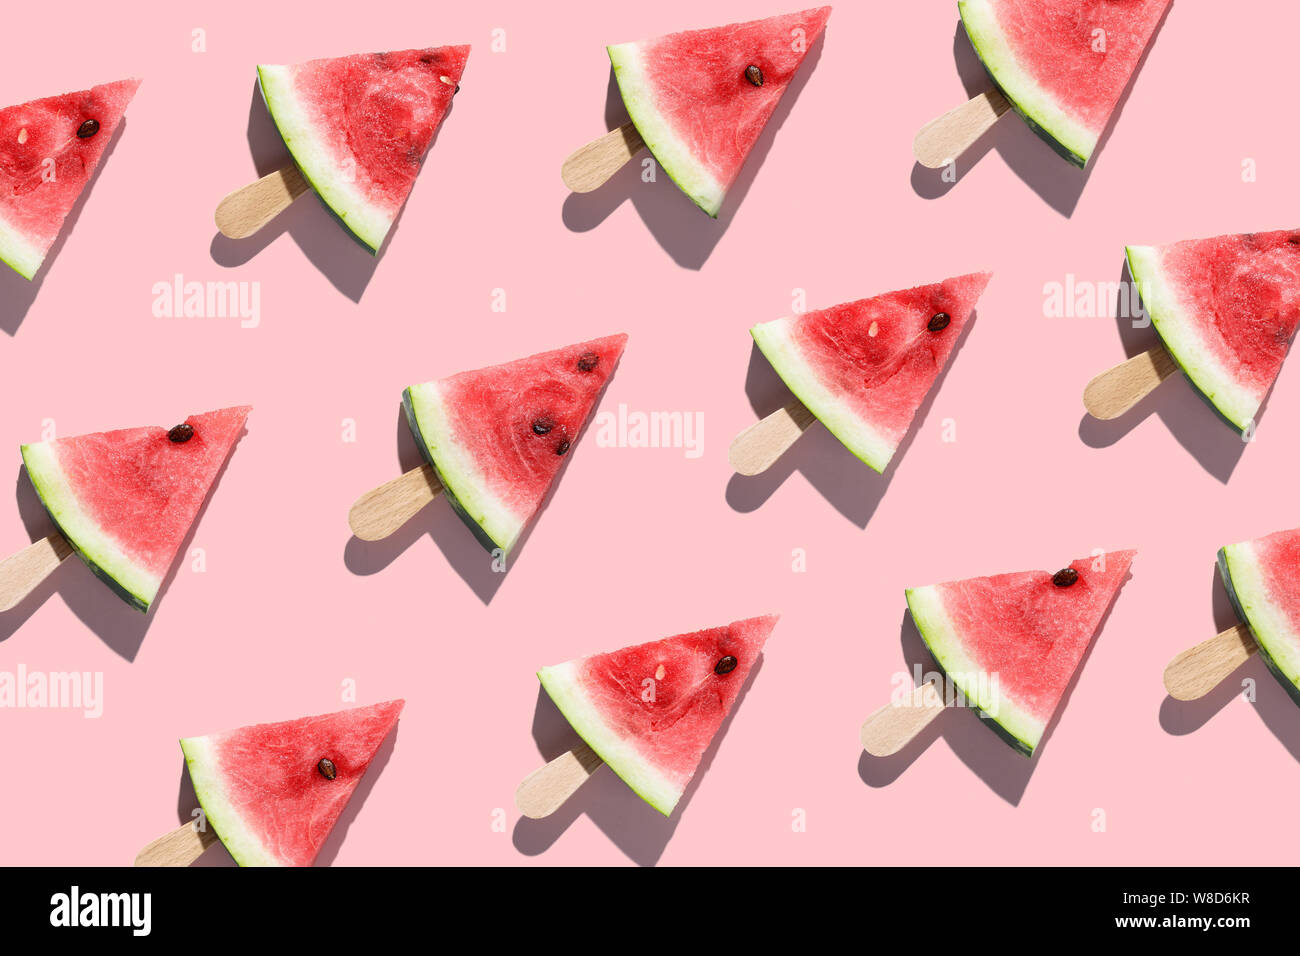 Aufgeschnittene Wassermelonen auf einem rosa Hintergrund angeordnet Stockfoto